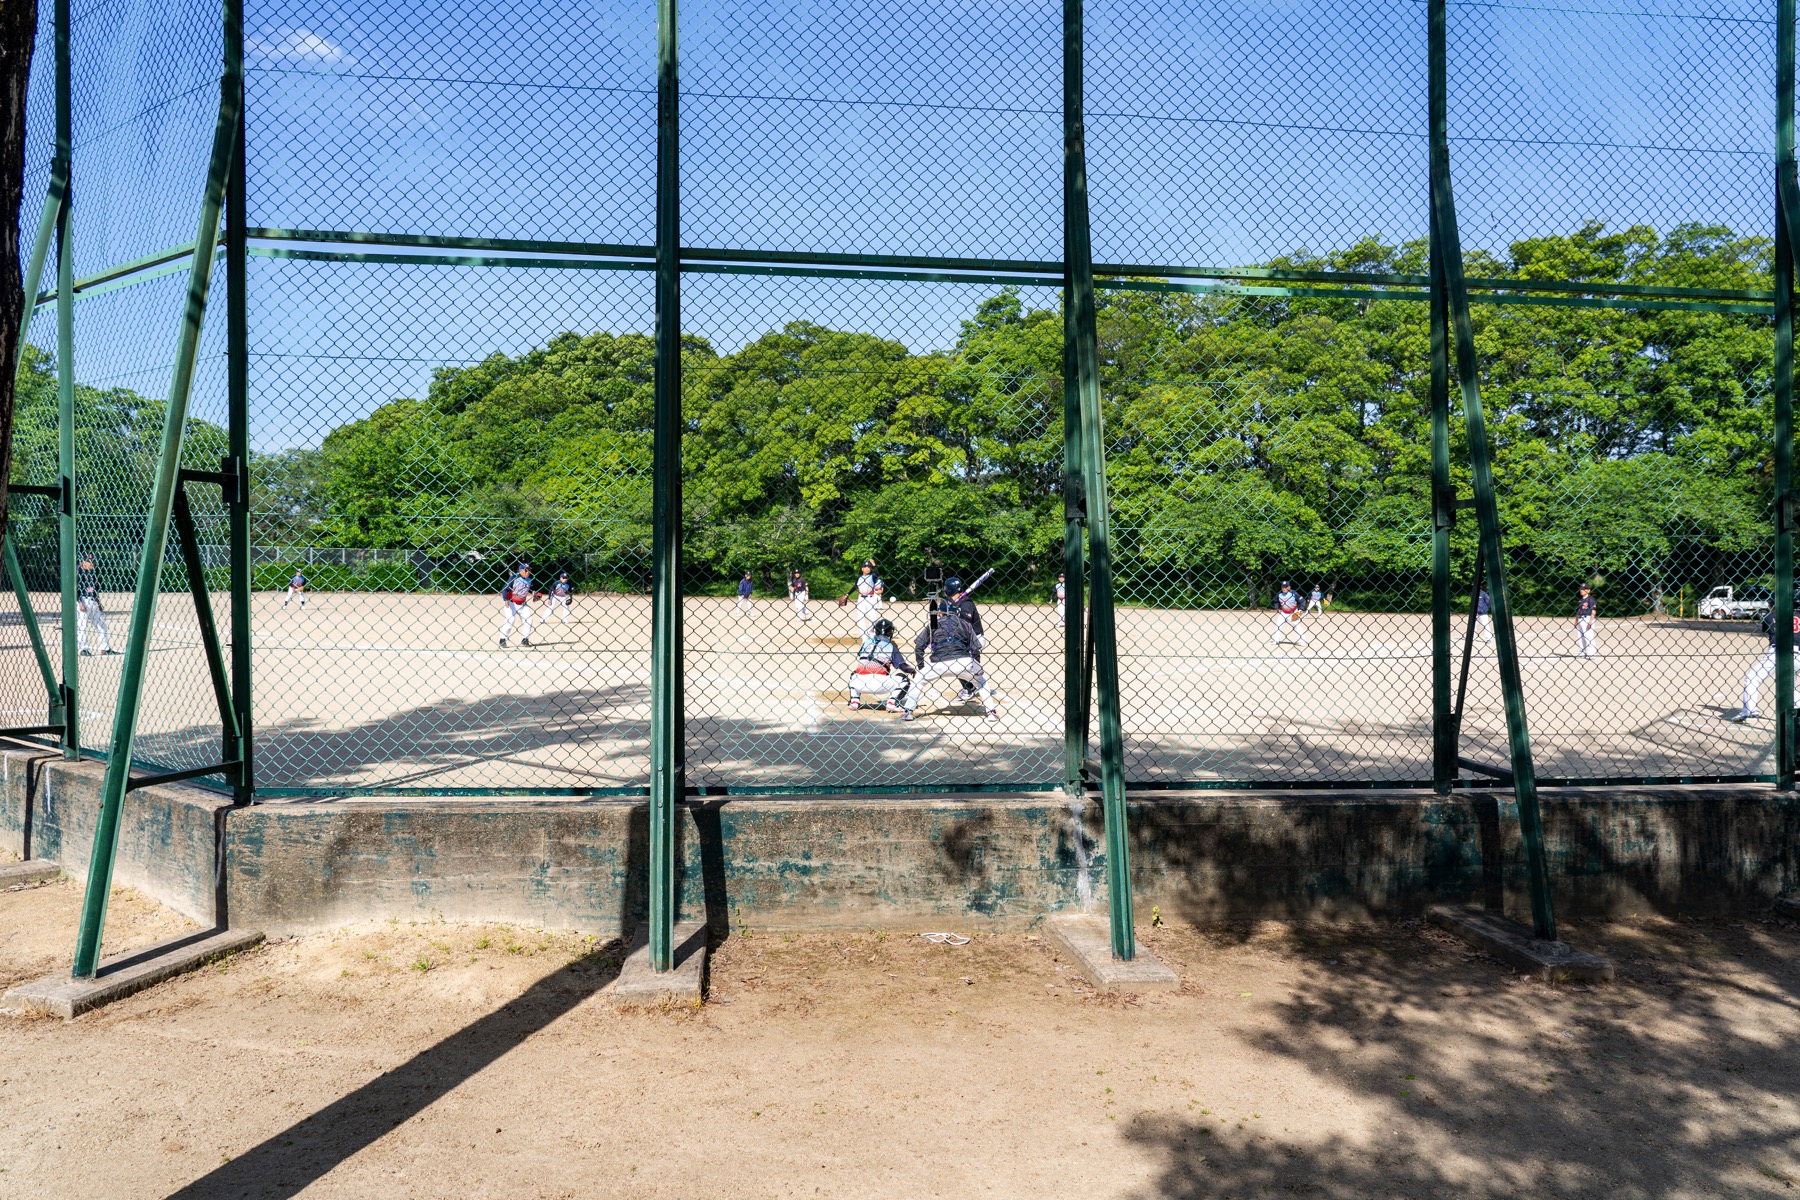 Softball Players at the Baseball Field at Sakazu Park